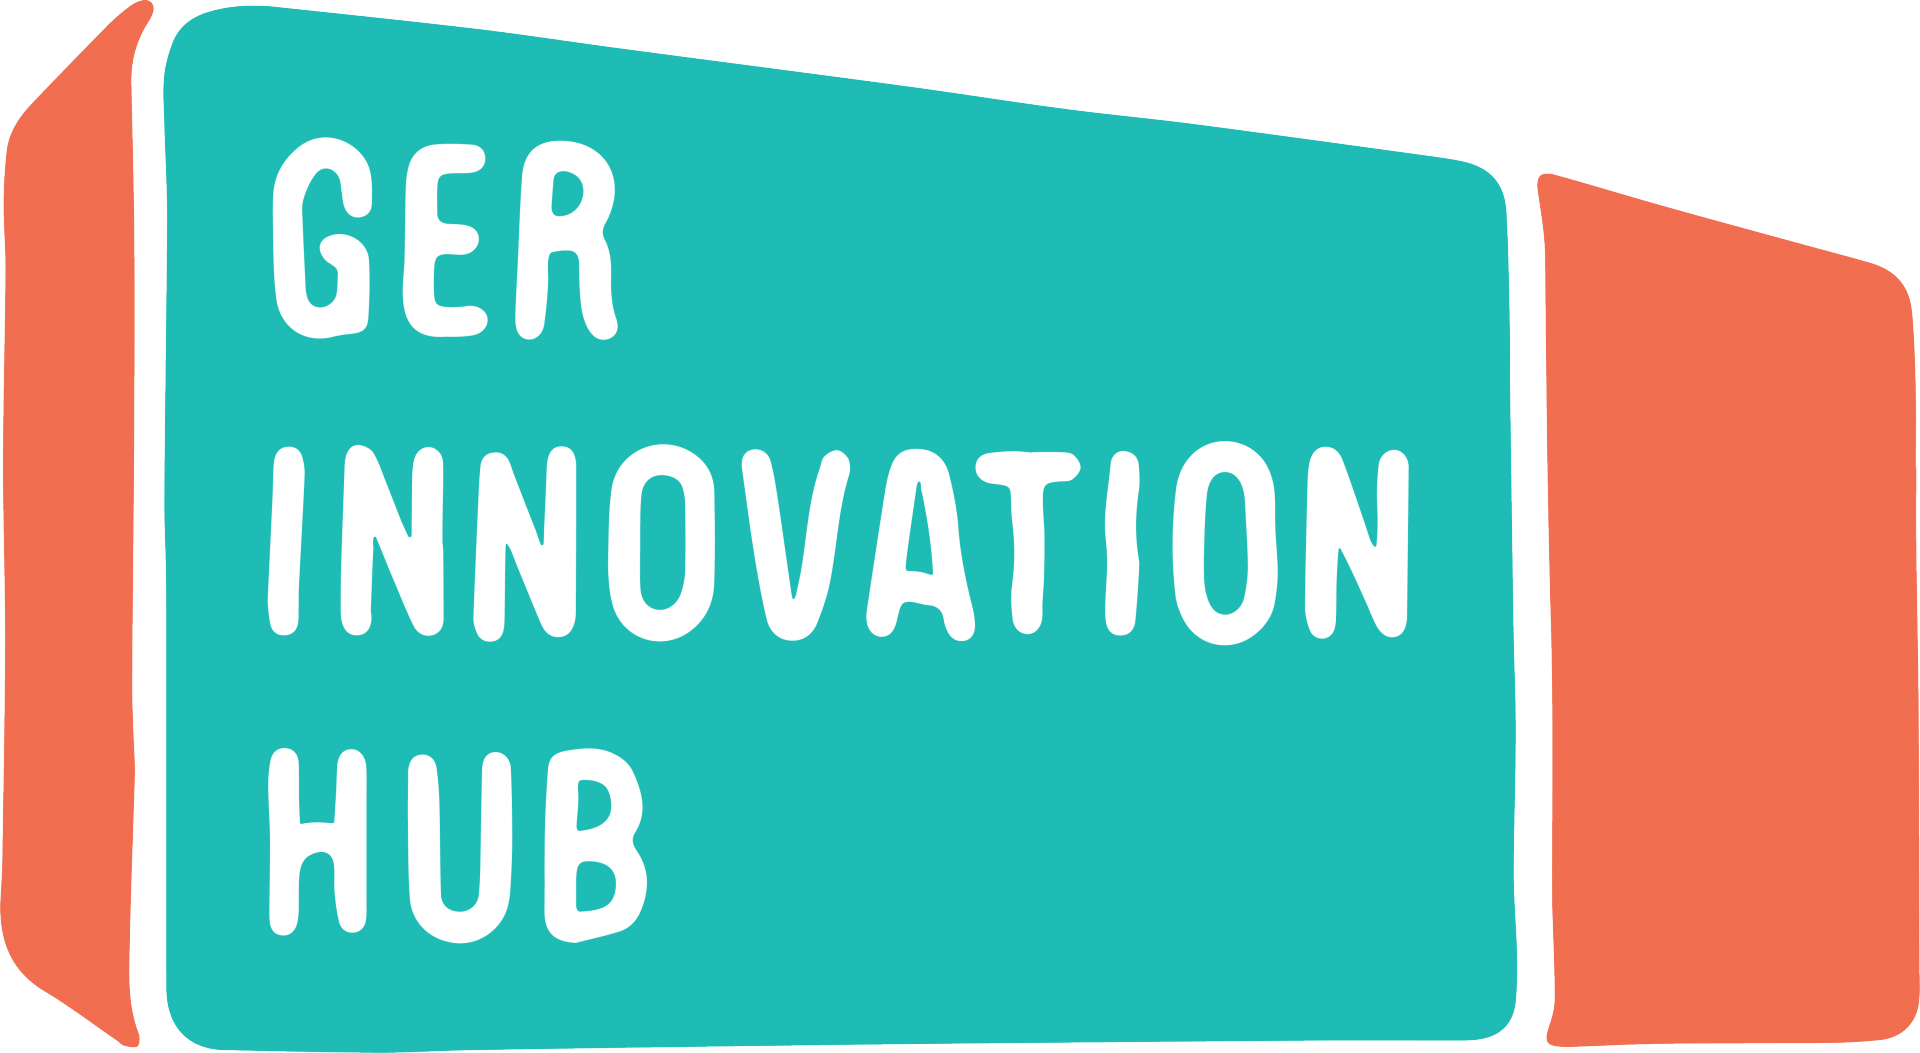 Ger Innovation Hub